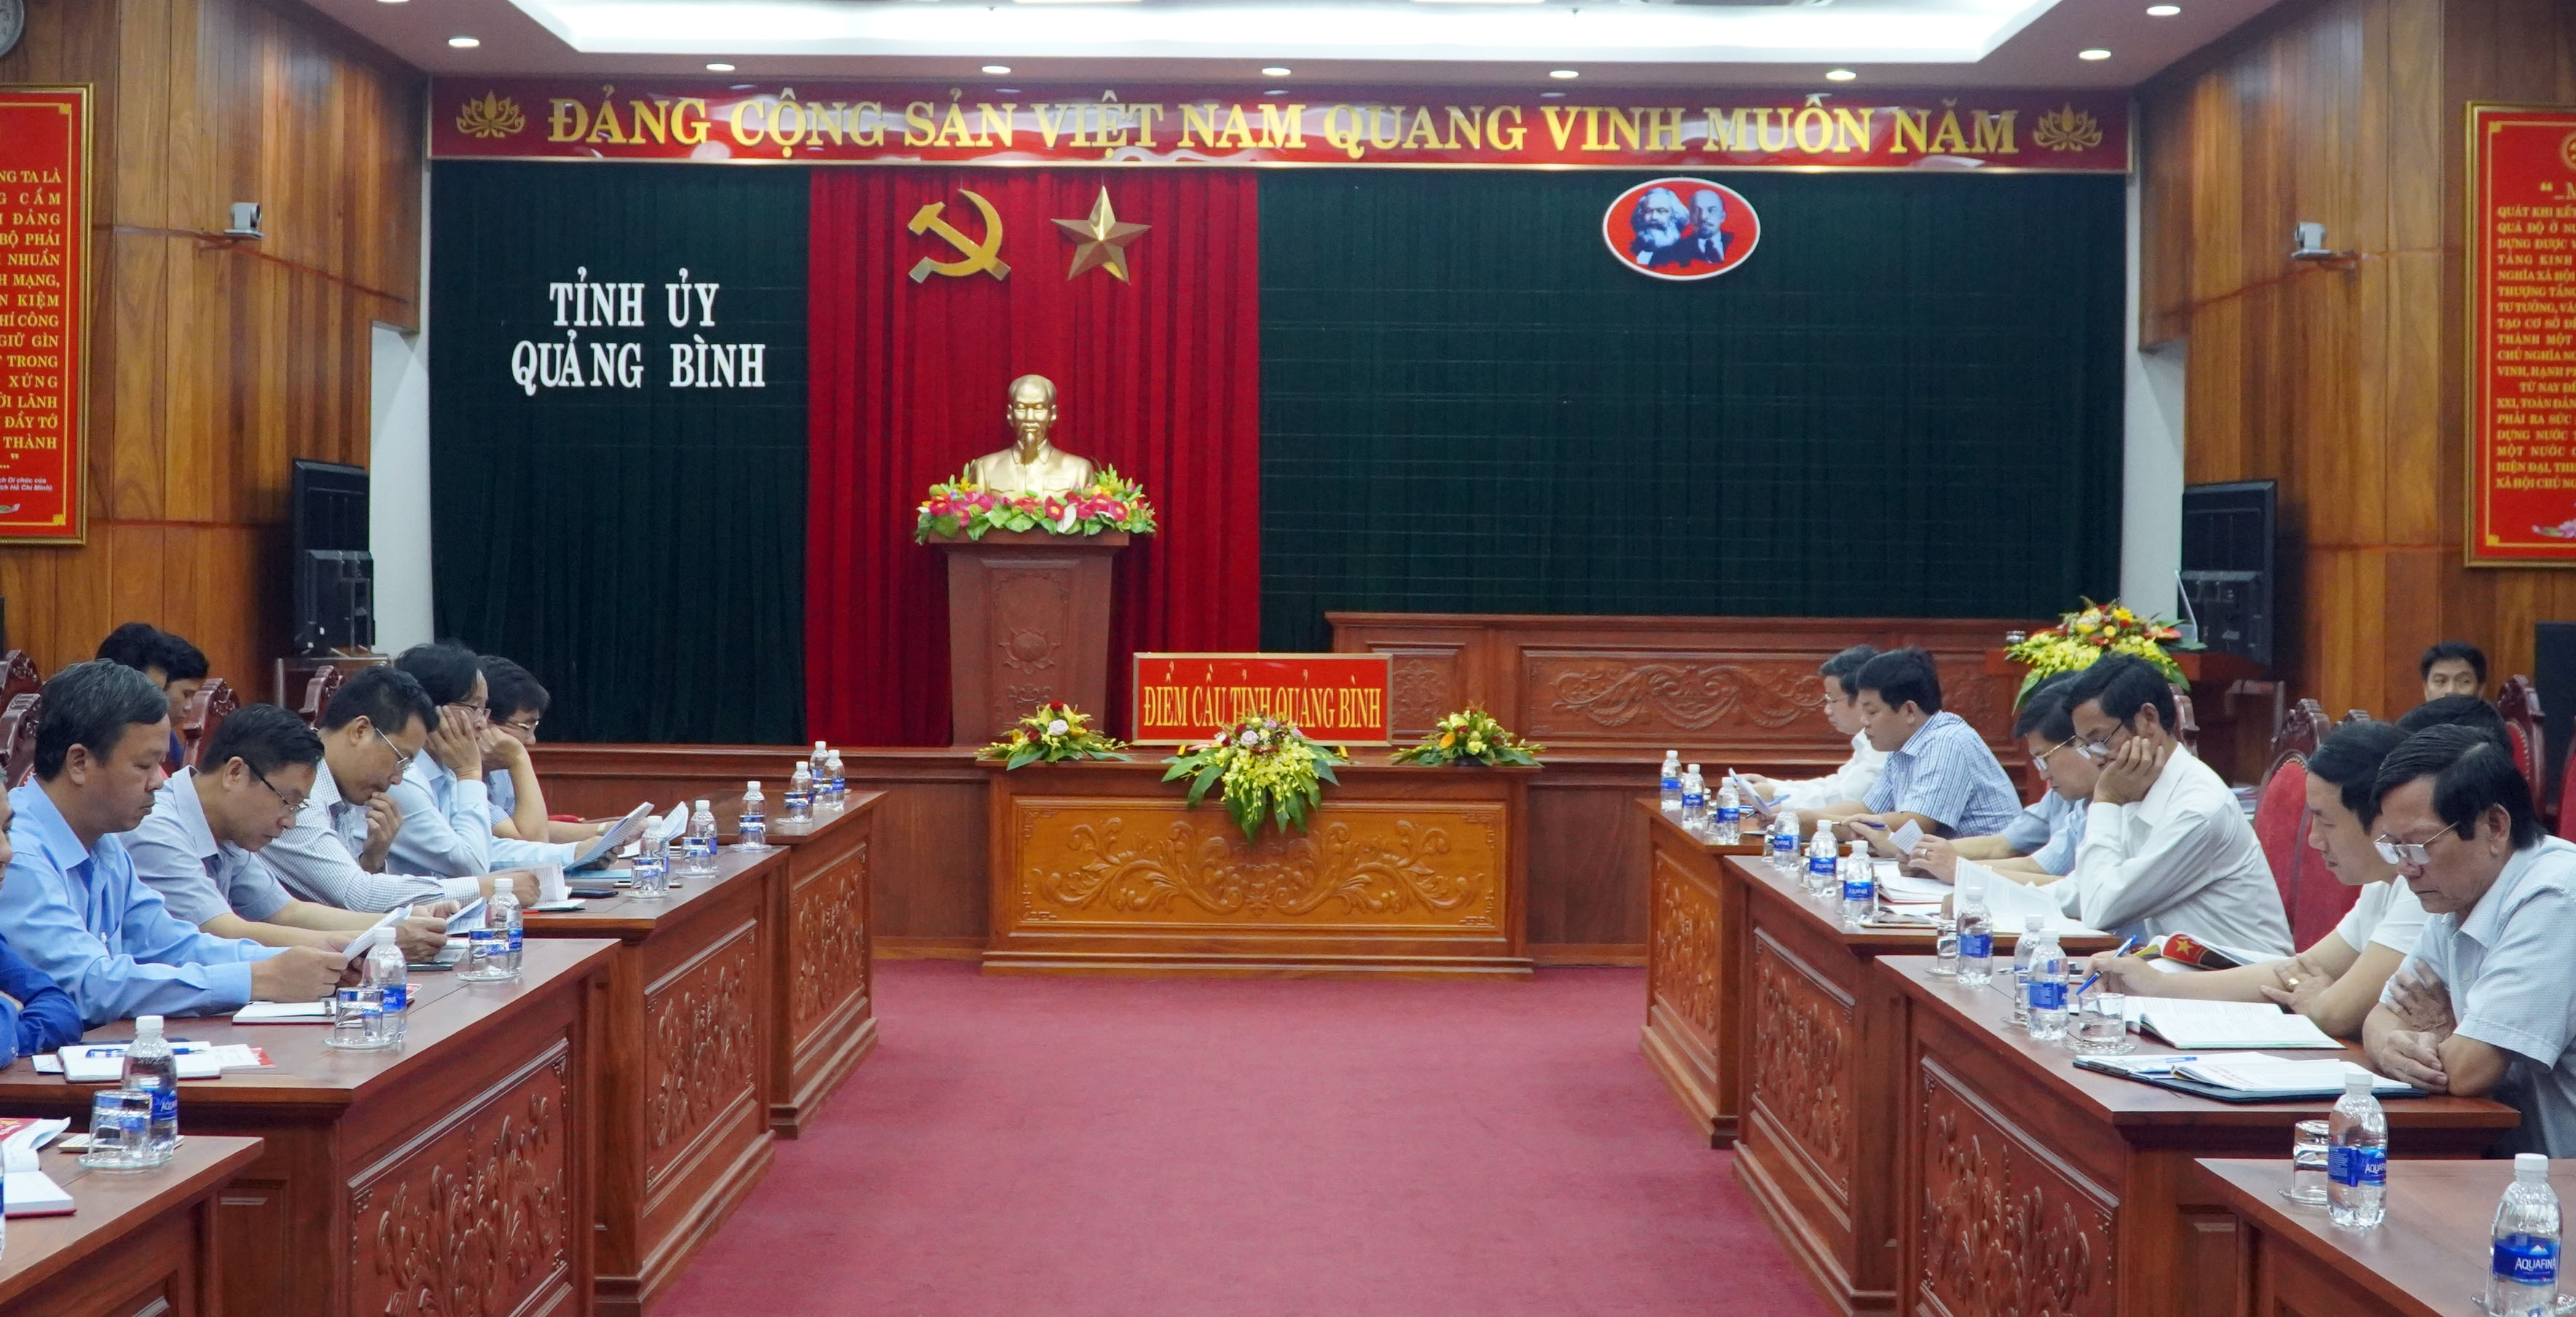 Toàn cảnh hội nghị tại điểm cầu tỉnh Quảng Bình